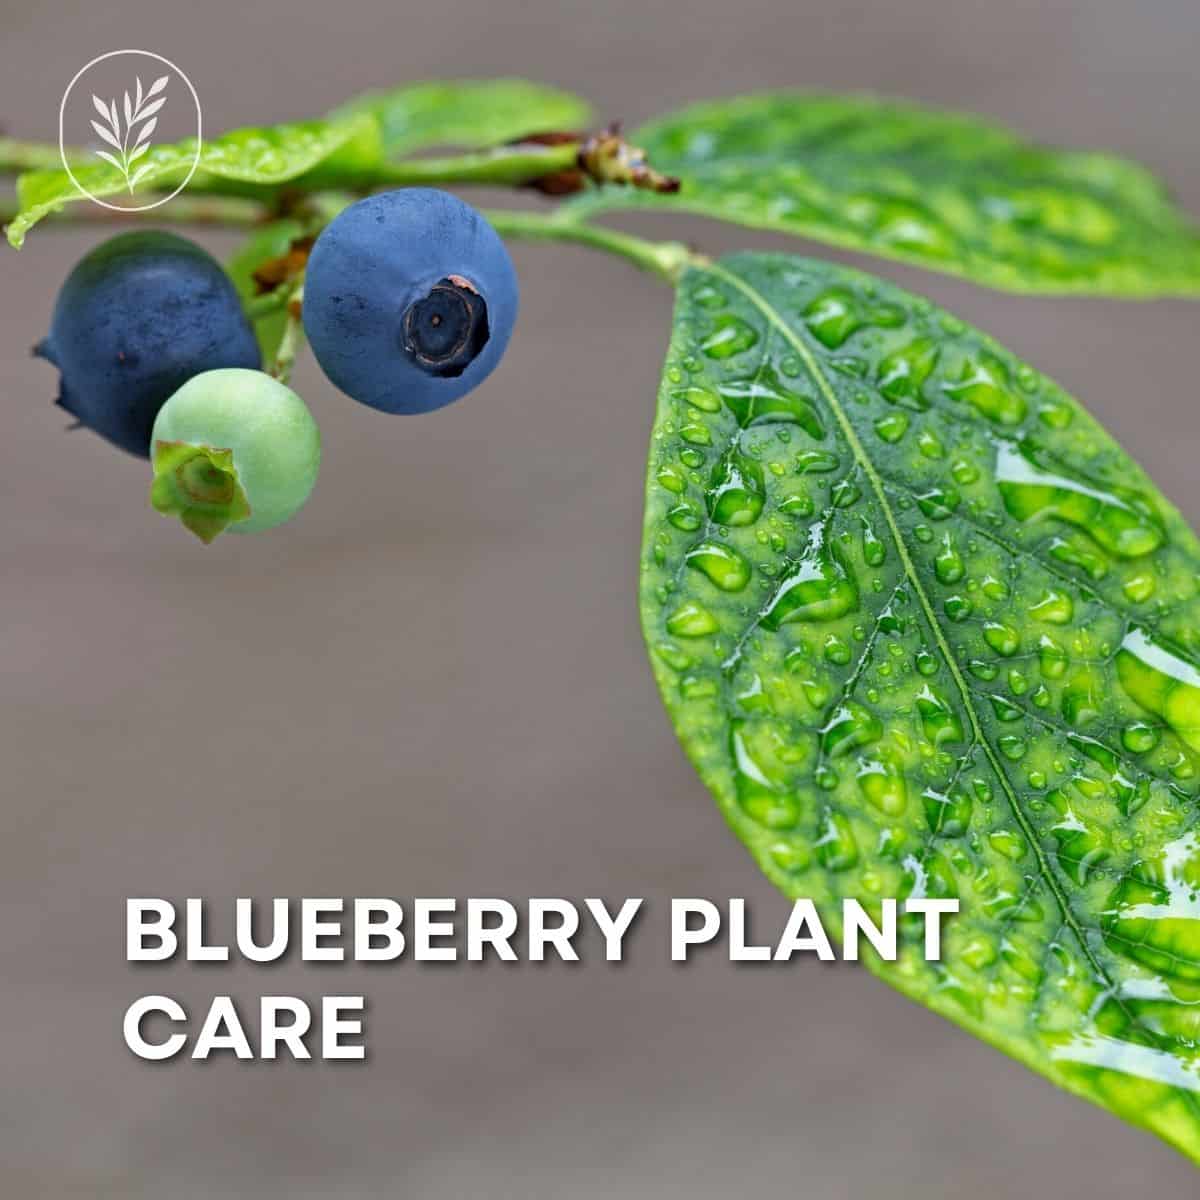 Blueberry plant care via @home4theharvest